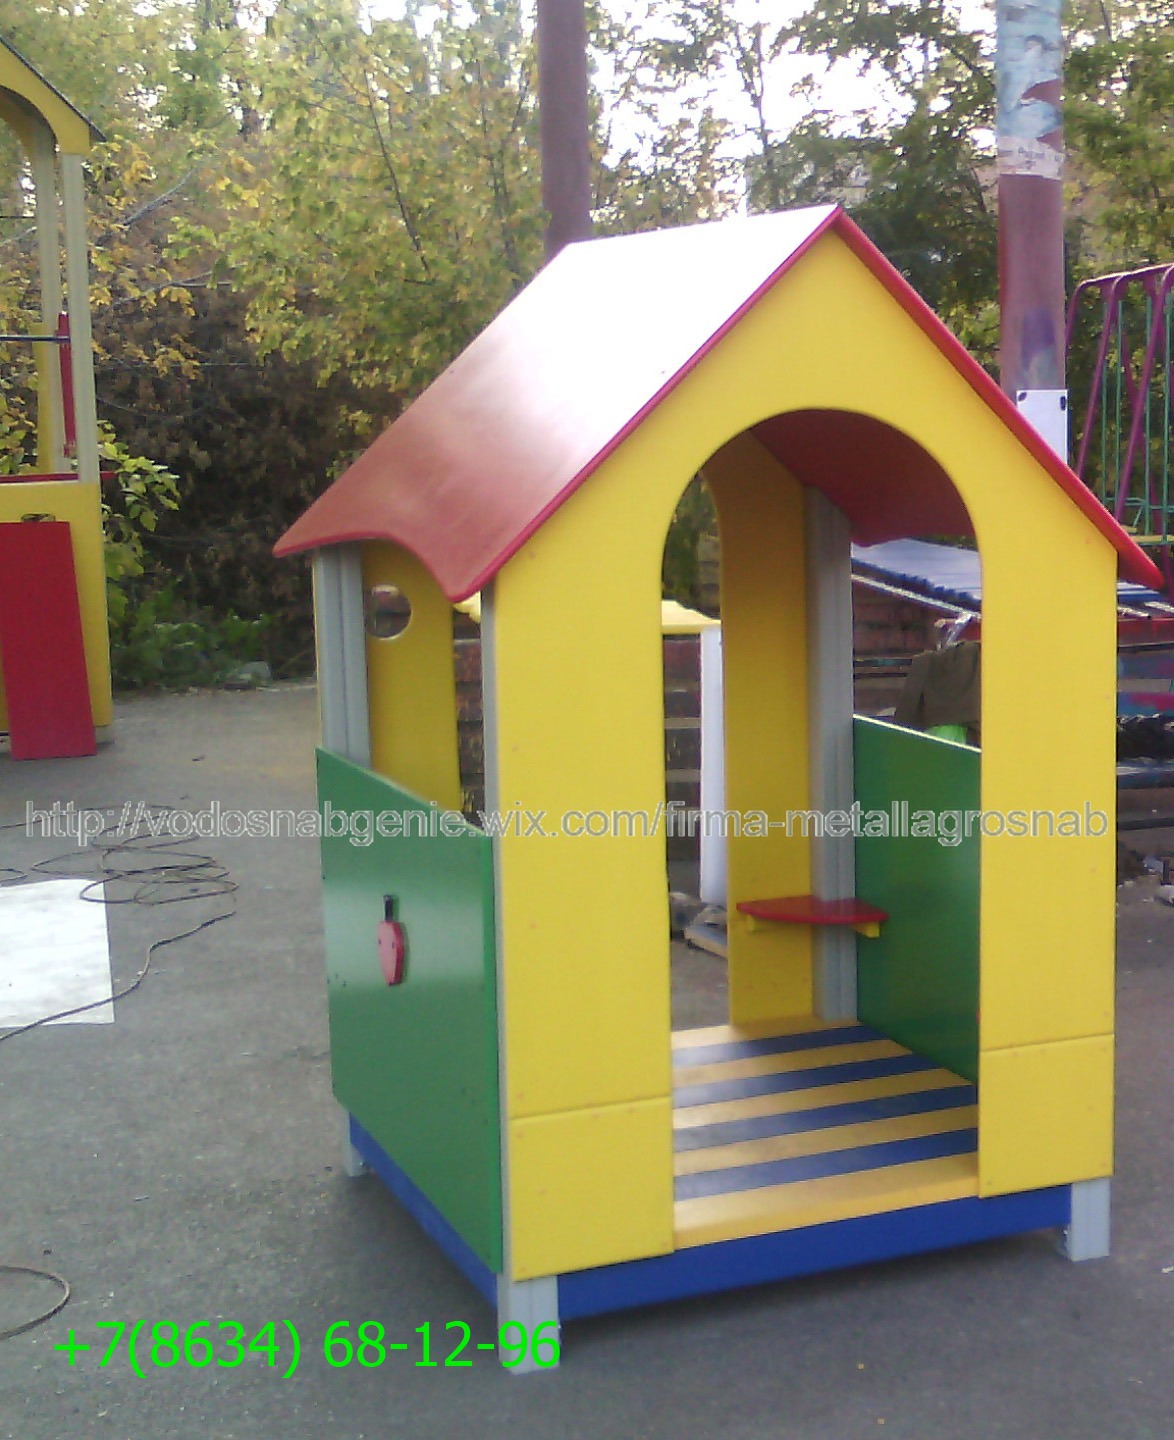 Детский игровой домик,доставим в любой регион России